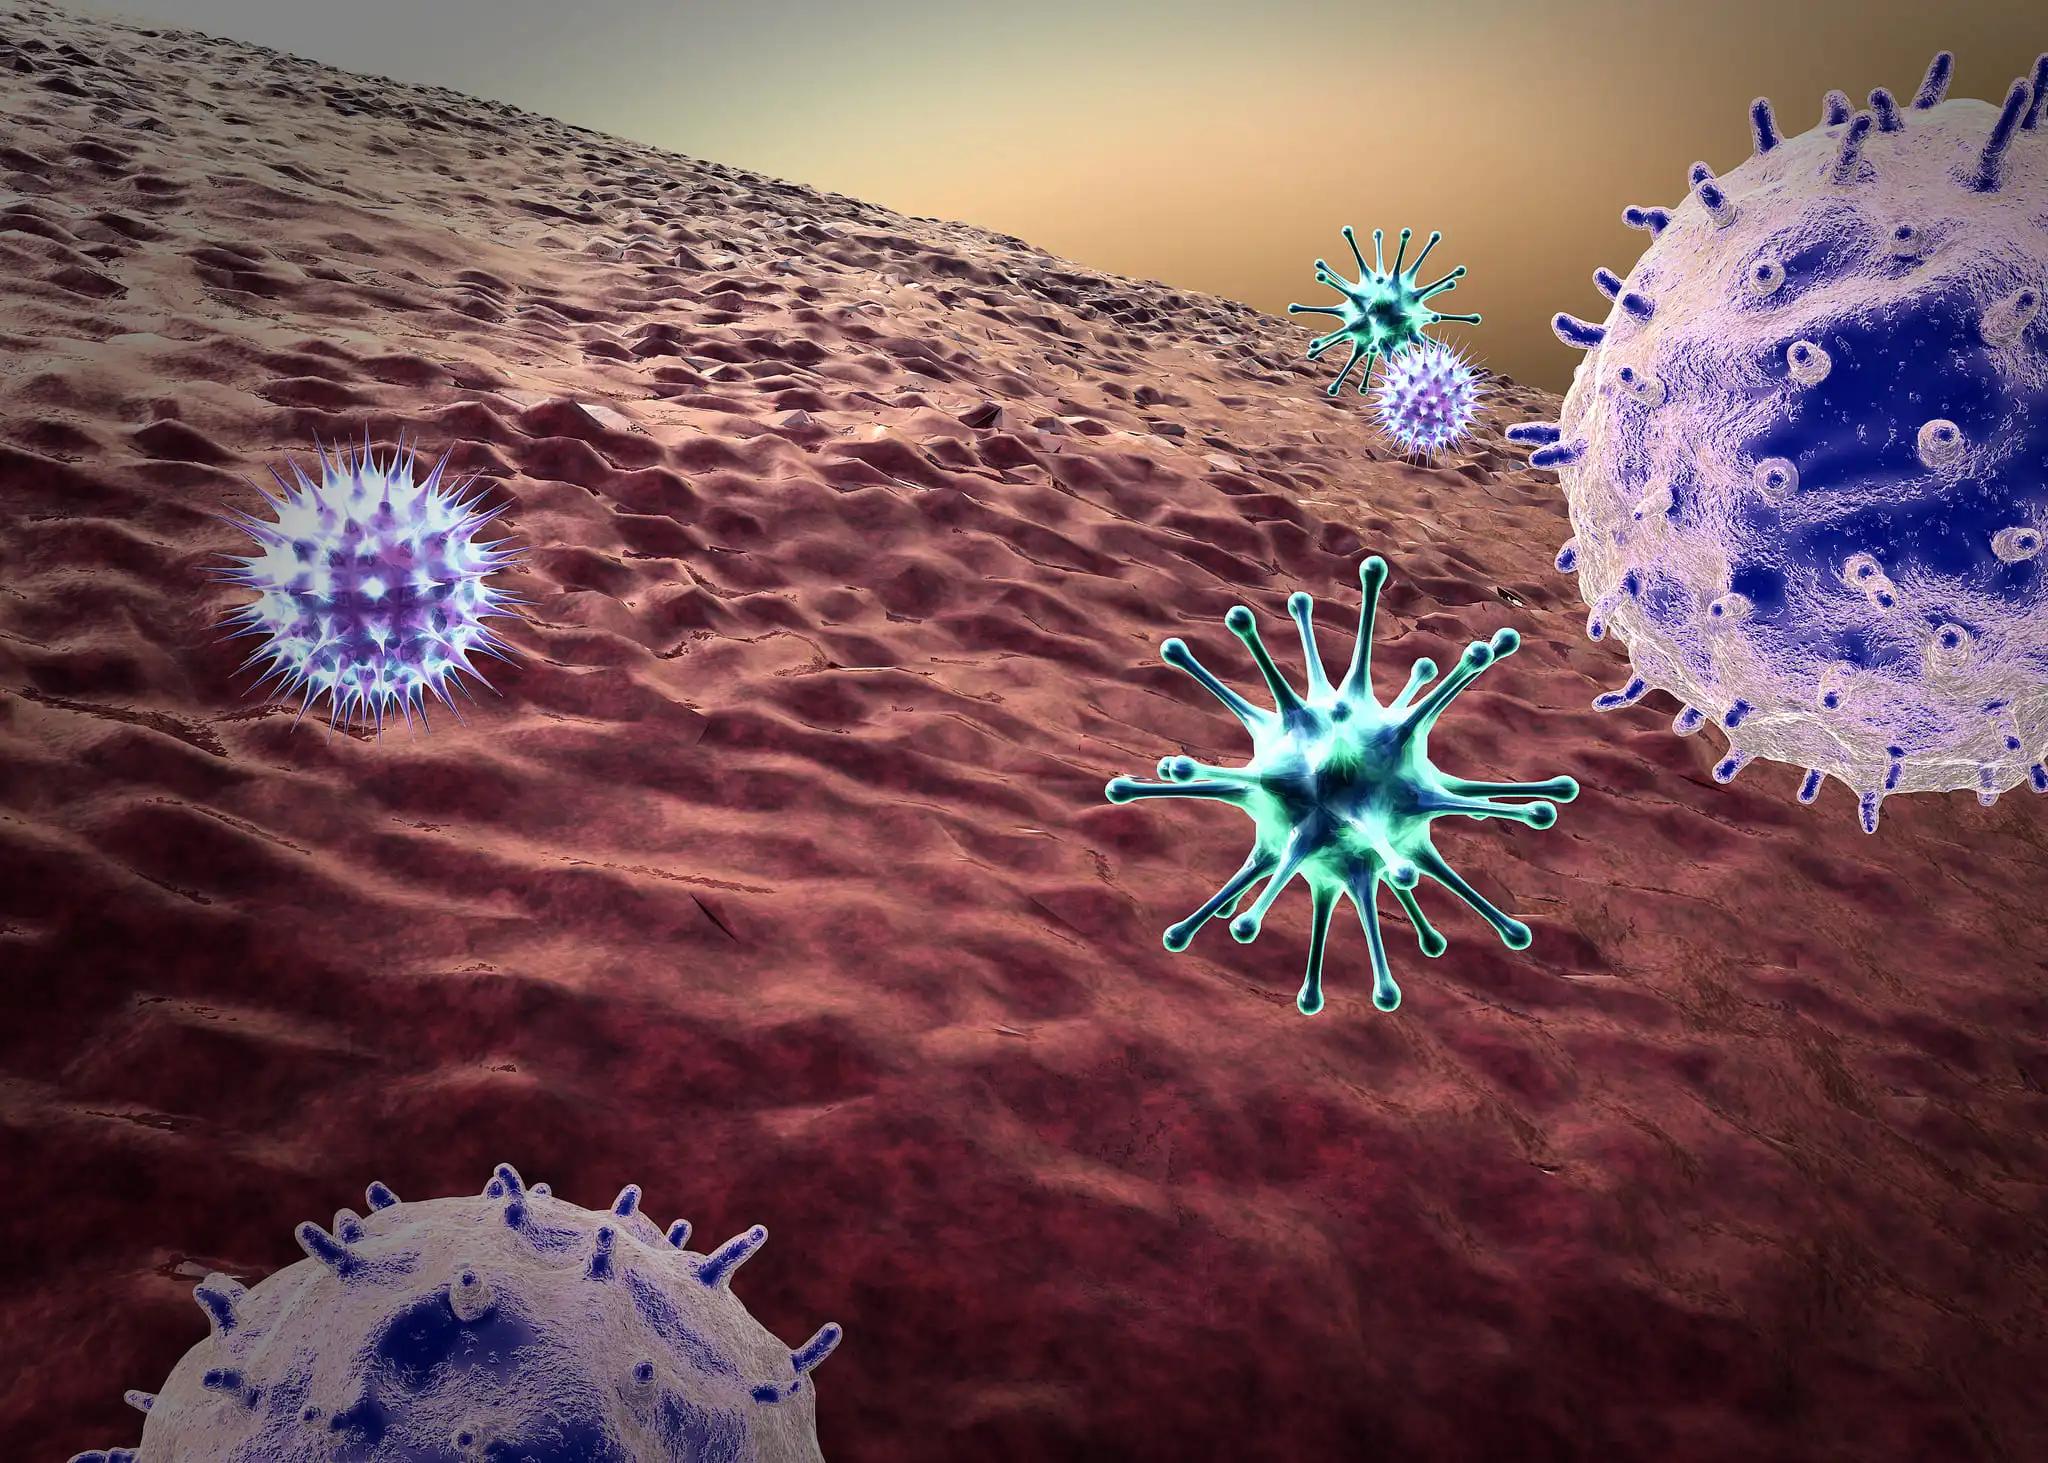 Lymphocyte Attack the Flu Virus